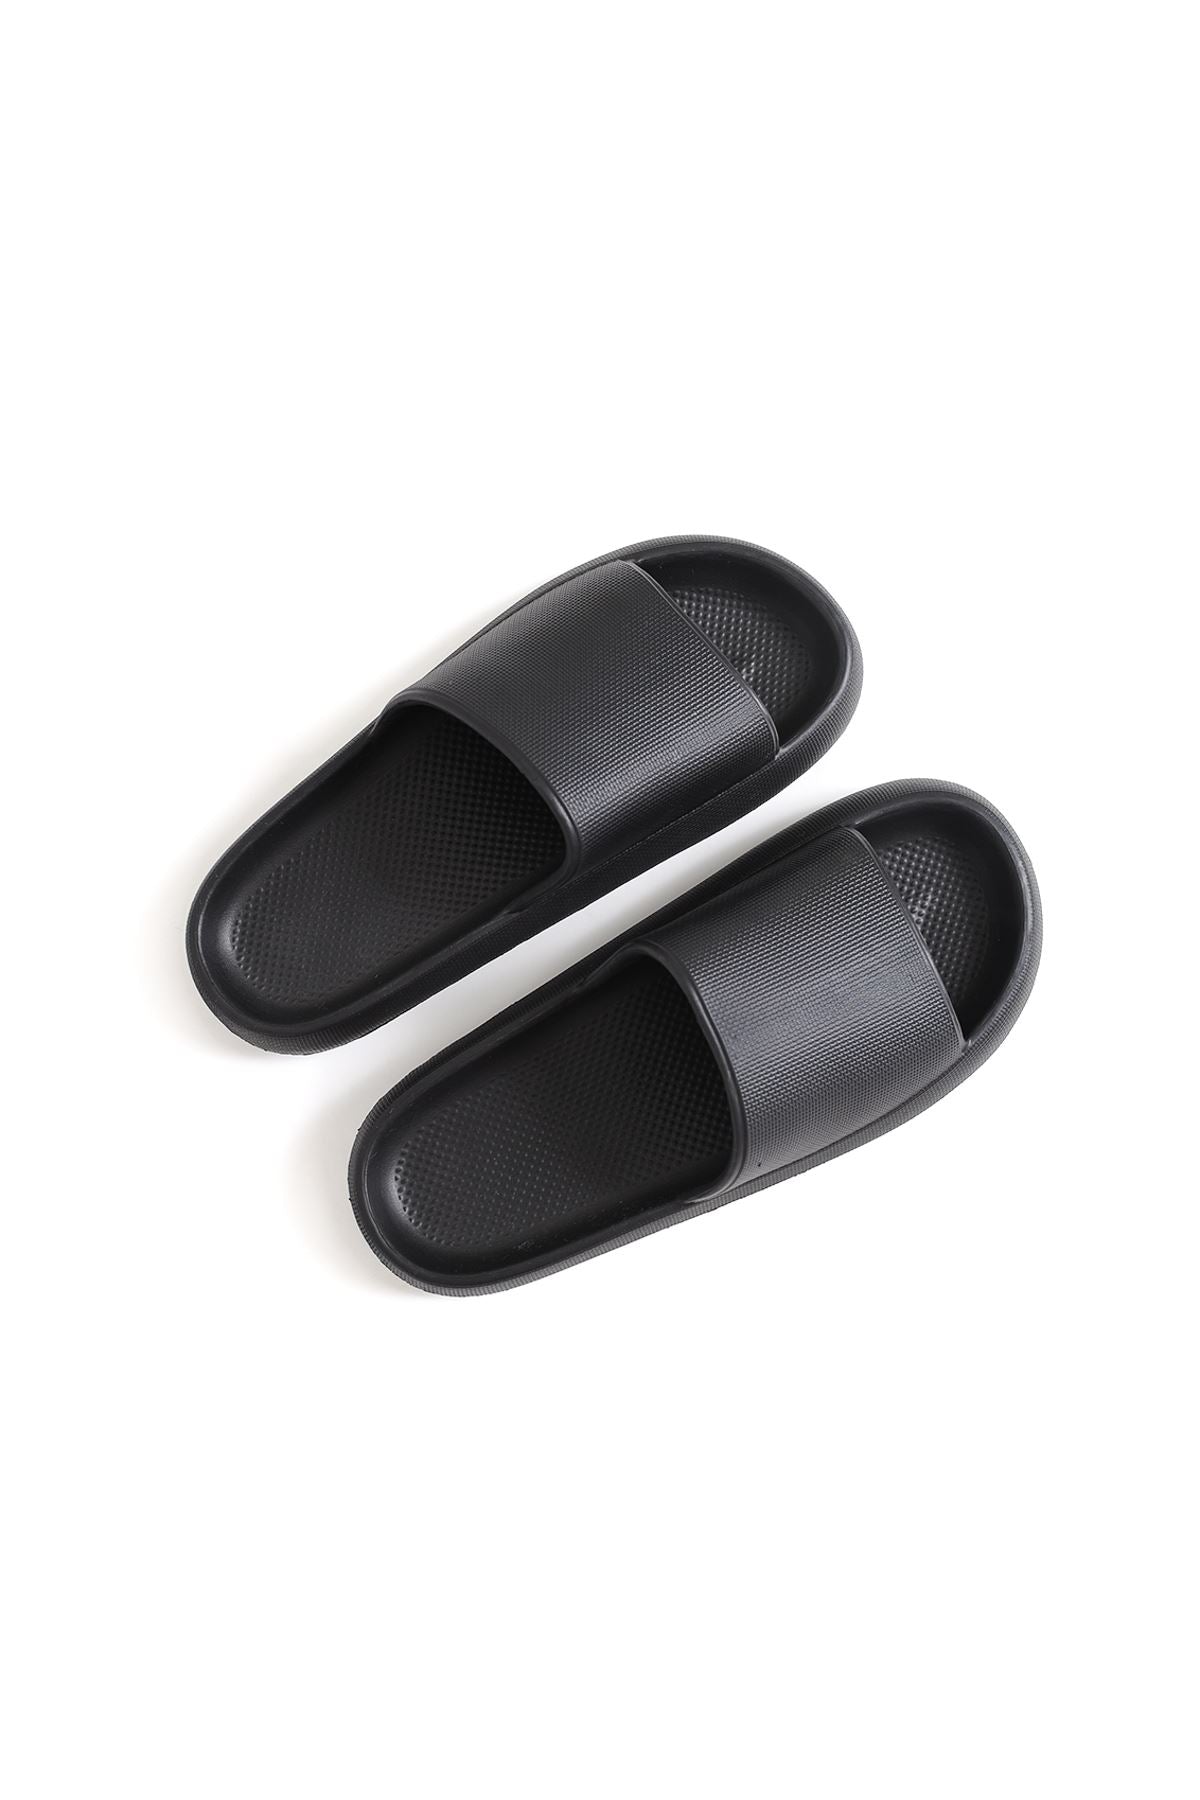 STM Design Cool Men's Slippers BLACK - STREETMODE ™